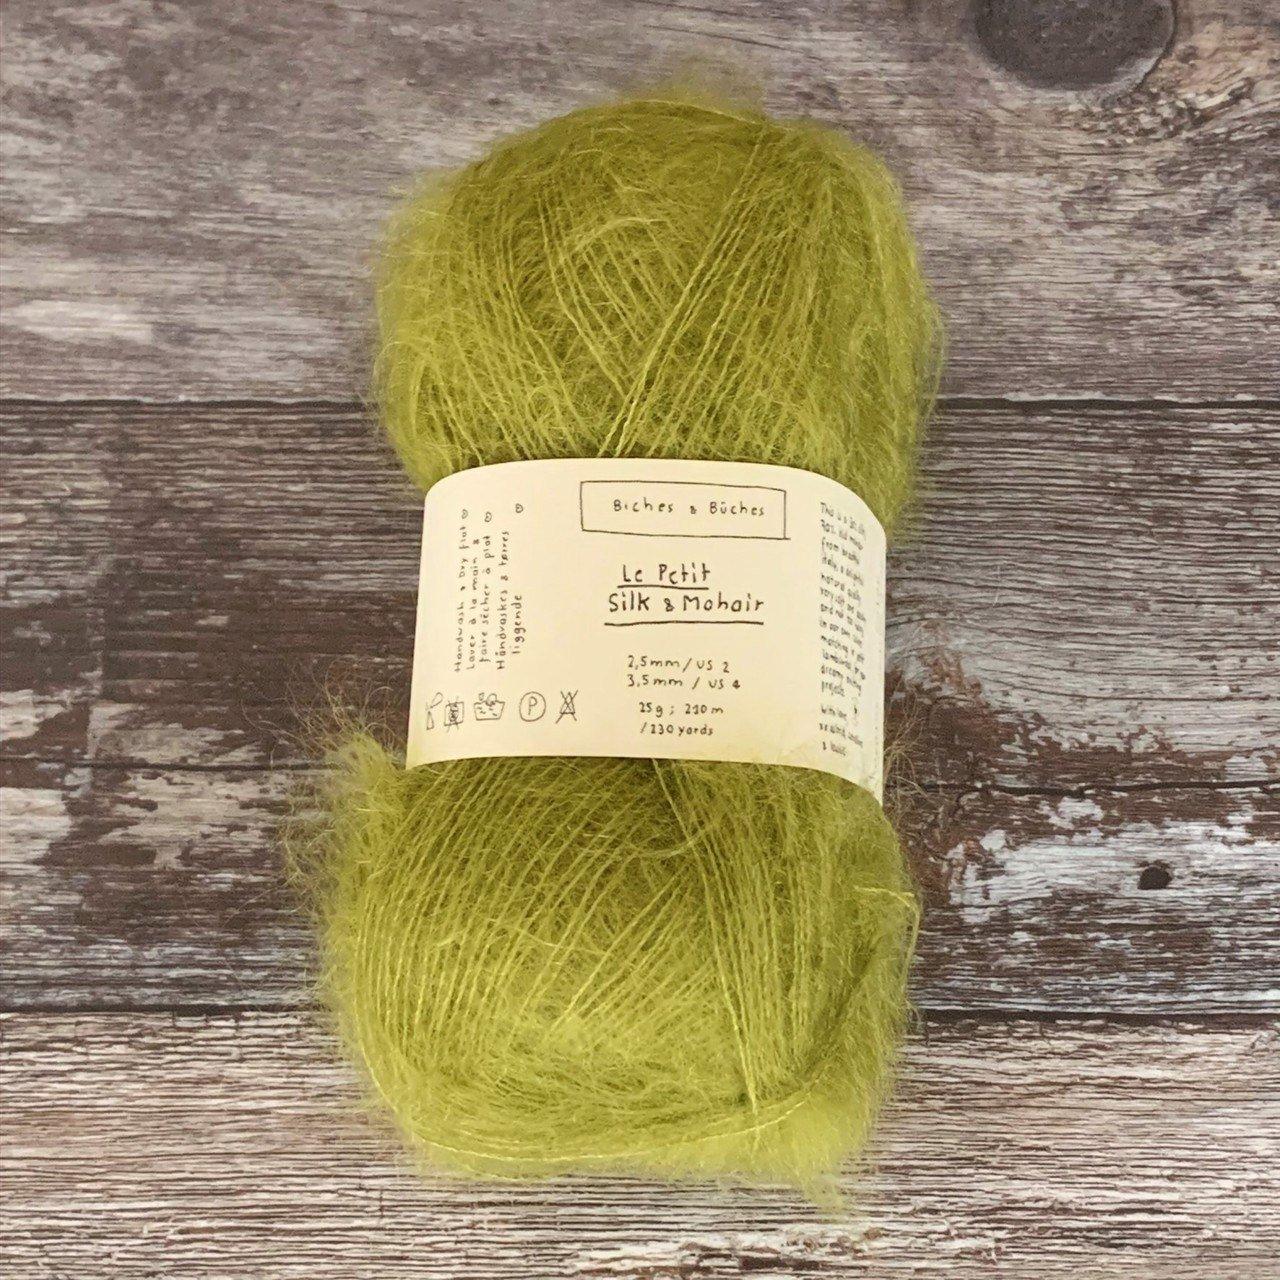 Biches & Bûches Biches & Bûches Le Petit Silk & Mohair - Medium Green Grey - Lace Knitting Yarn